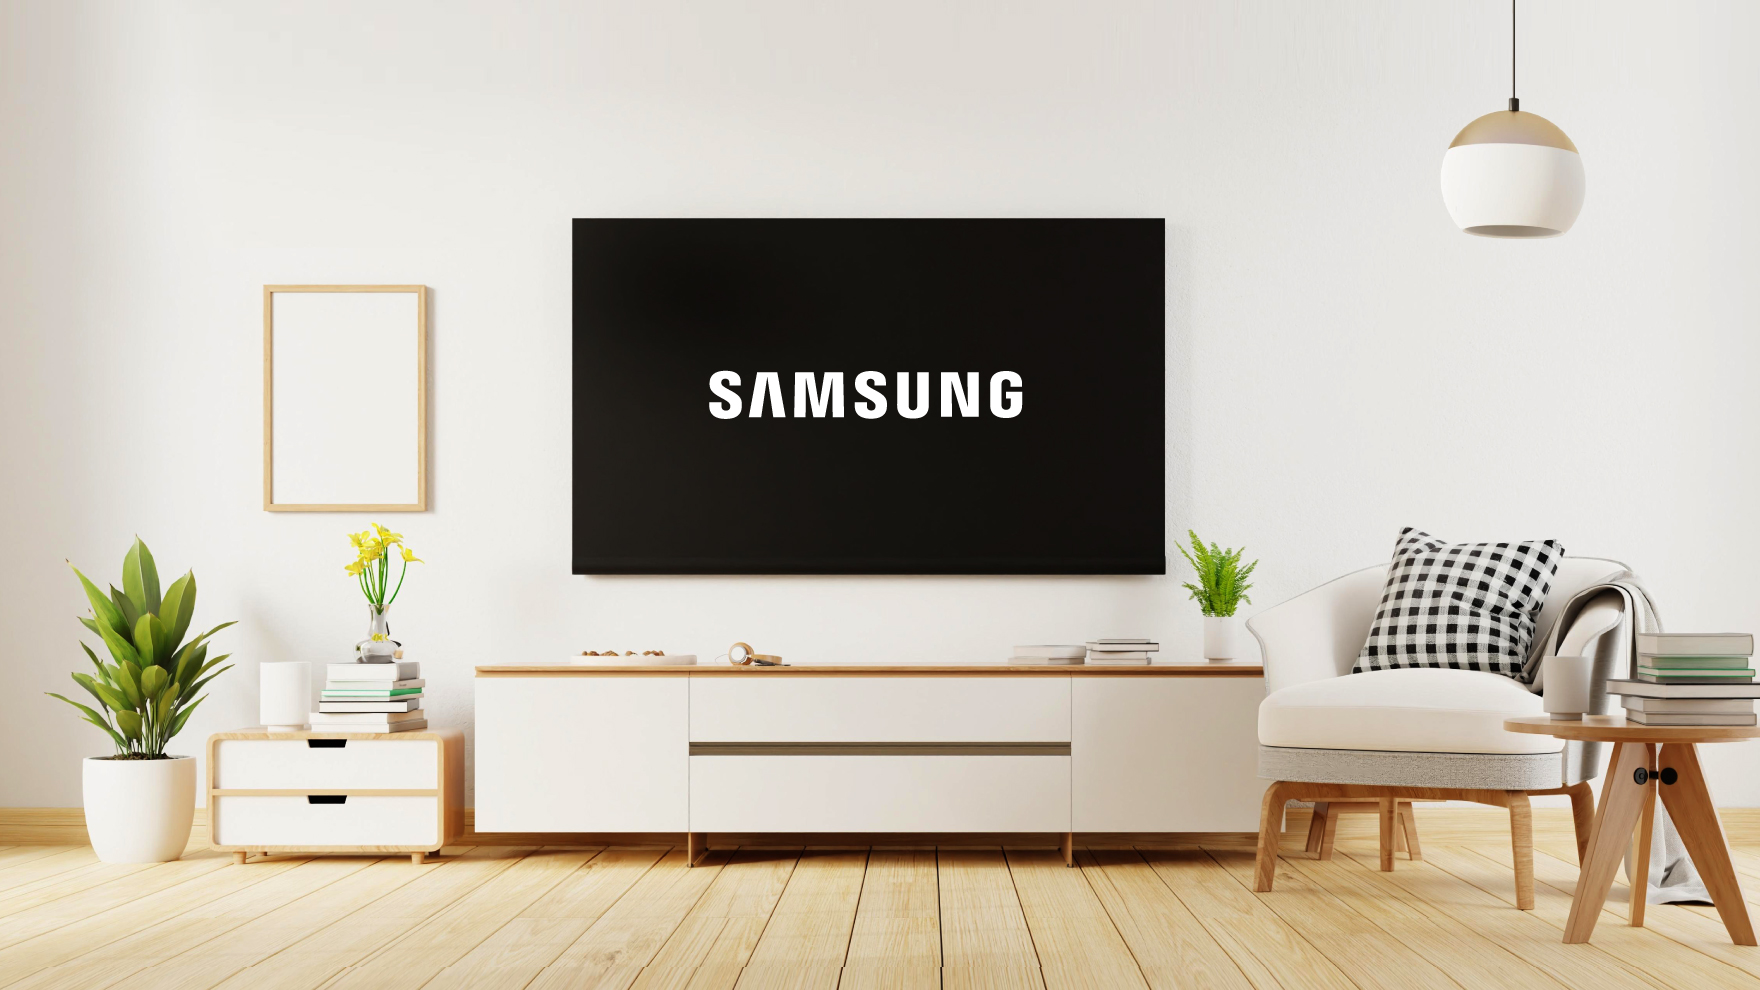 Kaip pirmąjį kartą įjungus televizorių sukurti „Samsung“ paskyrą? | BITĖ